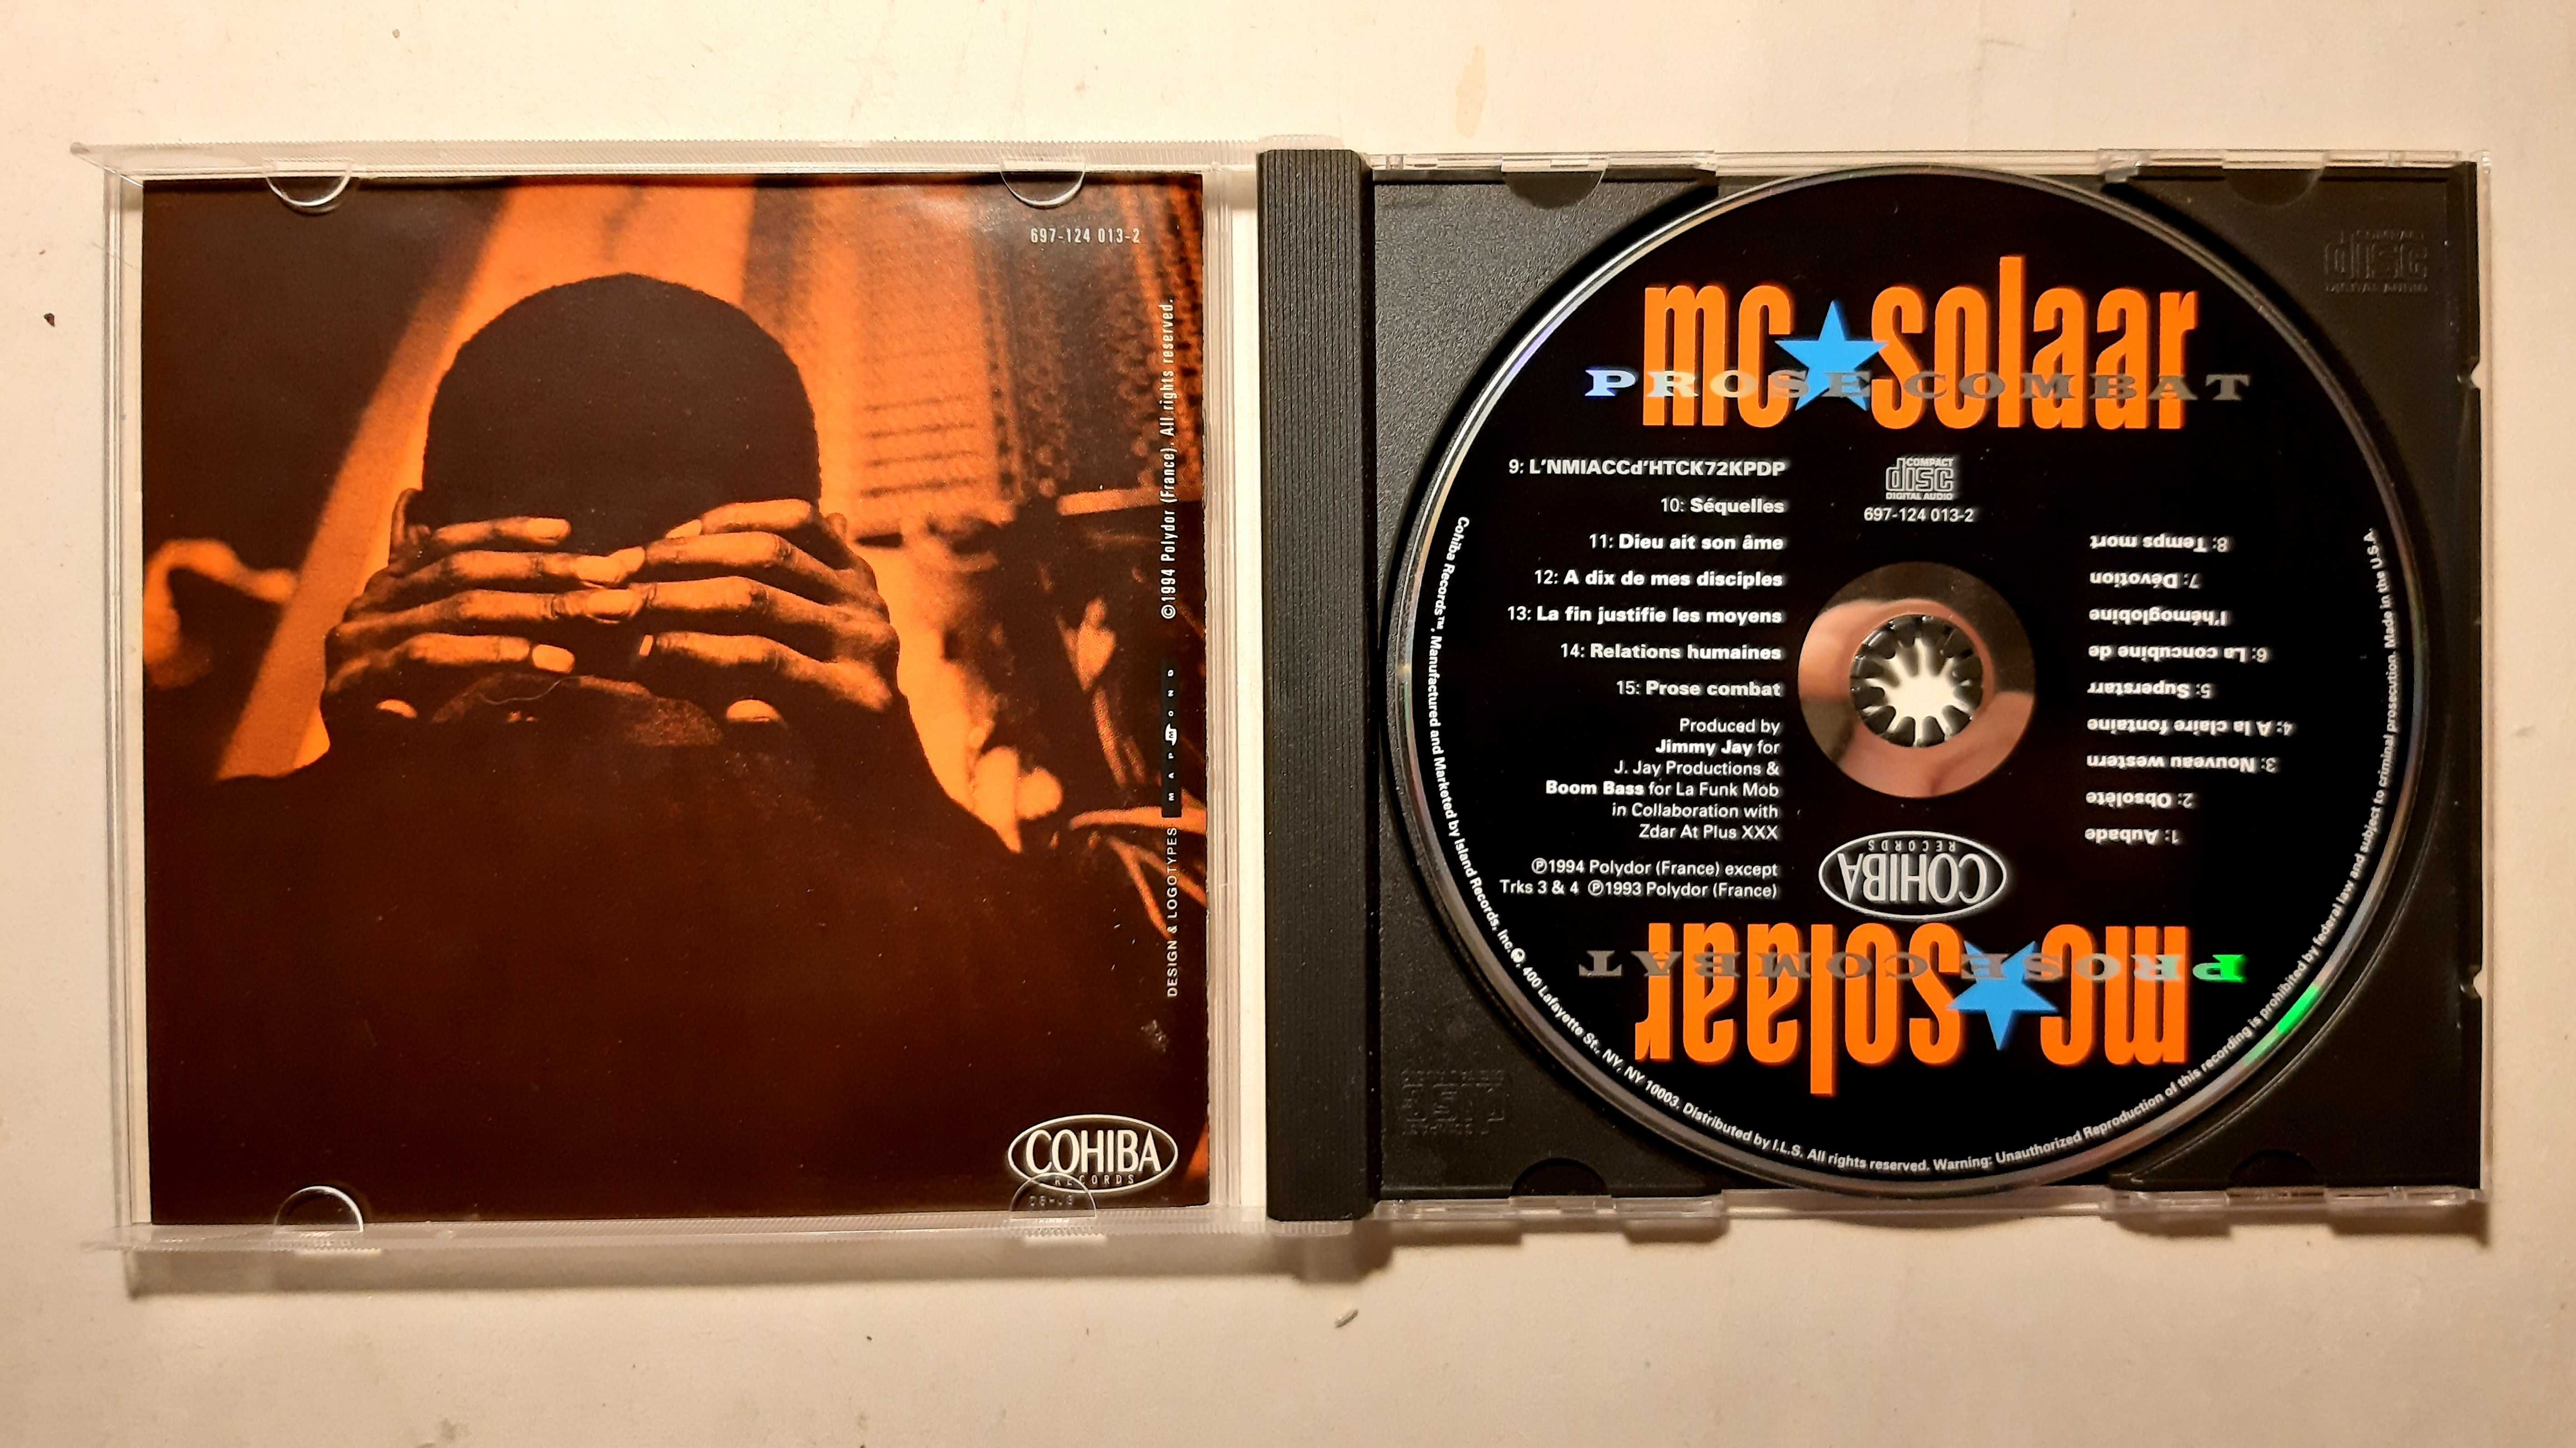 Płyty CD, płyta MC Solaar ‎– Prose Combat, francuski HIP-HOP